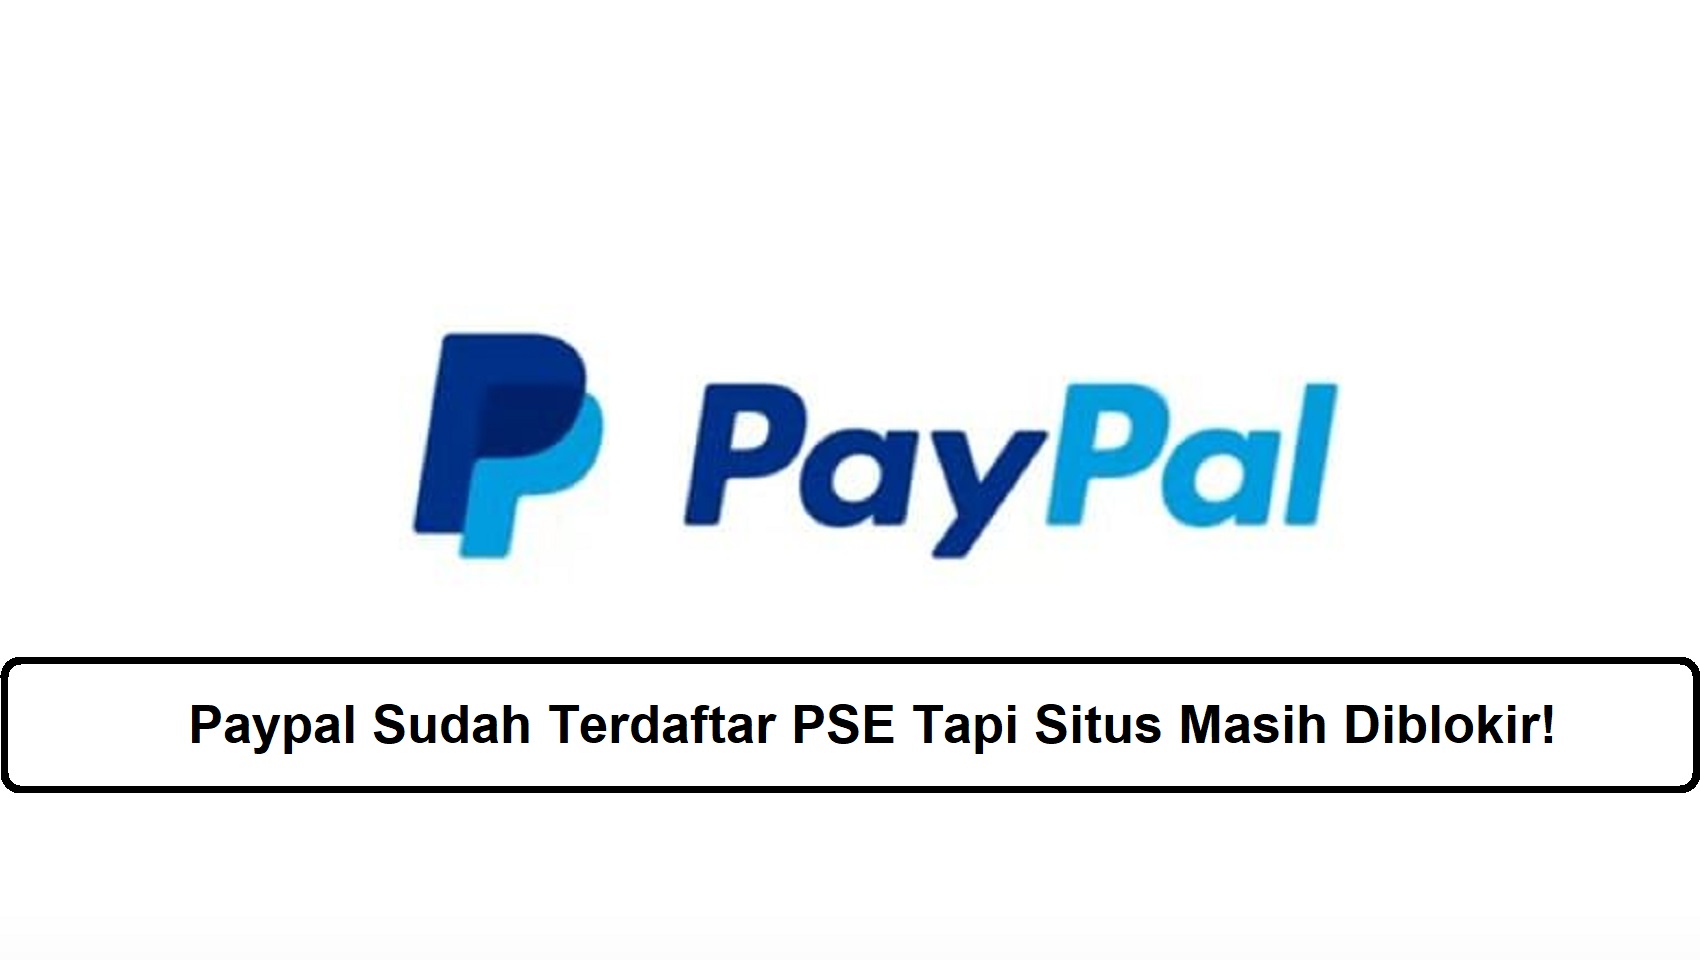 Paypal Sudah Terdaftar PSE Tapi Situs Masih Diblokir!